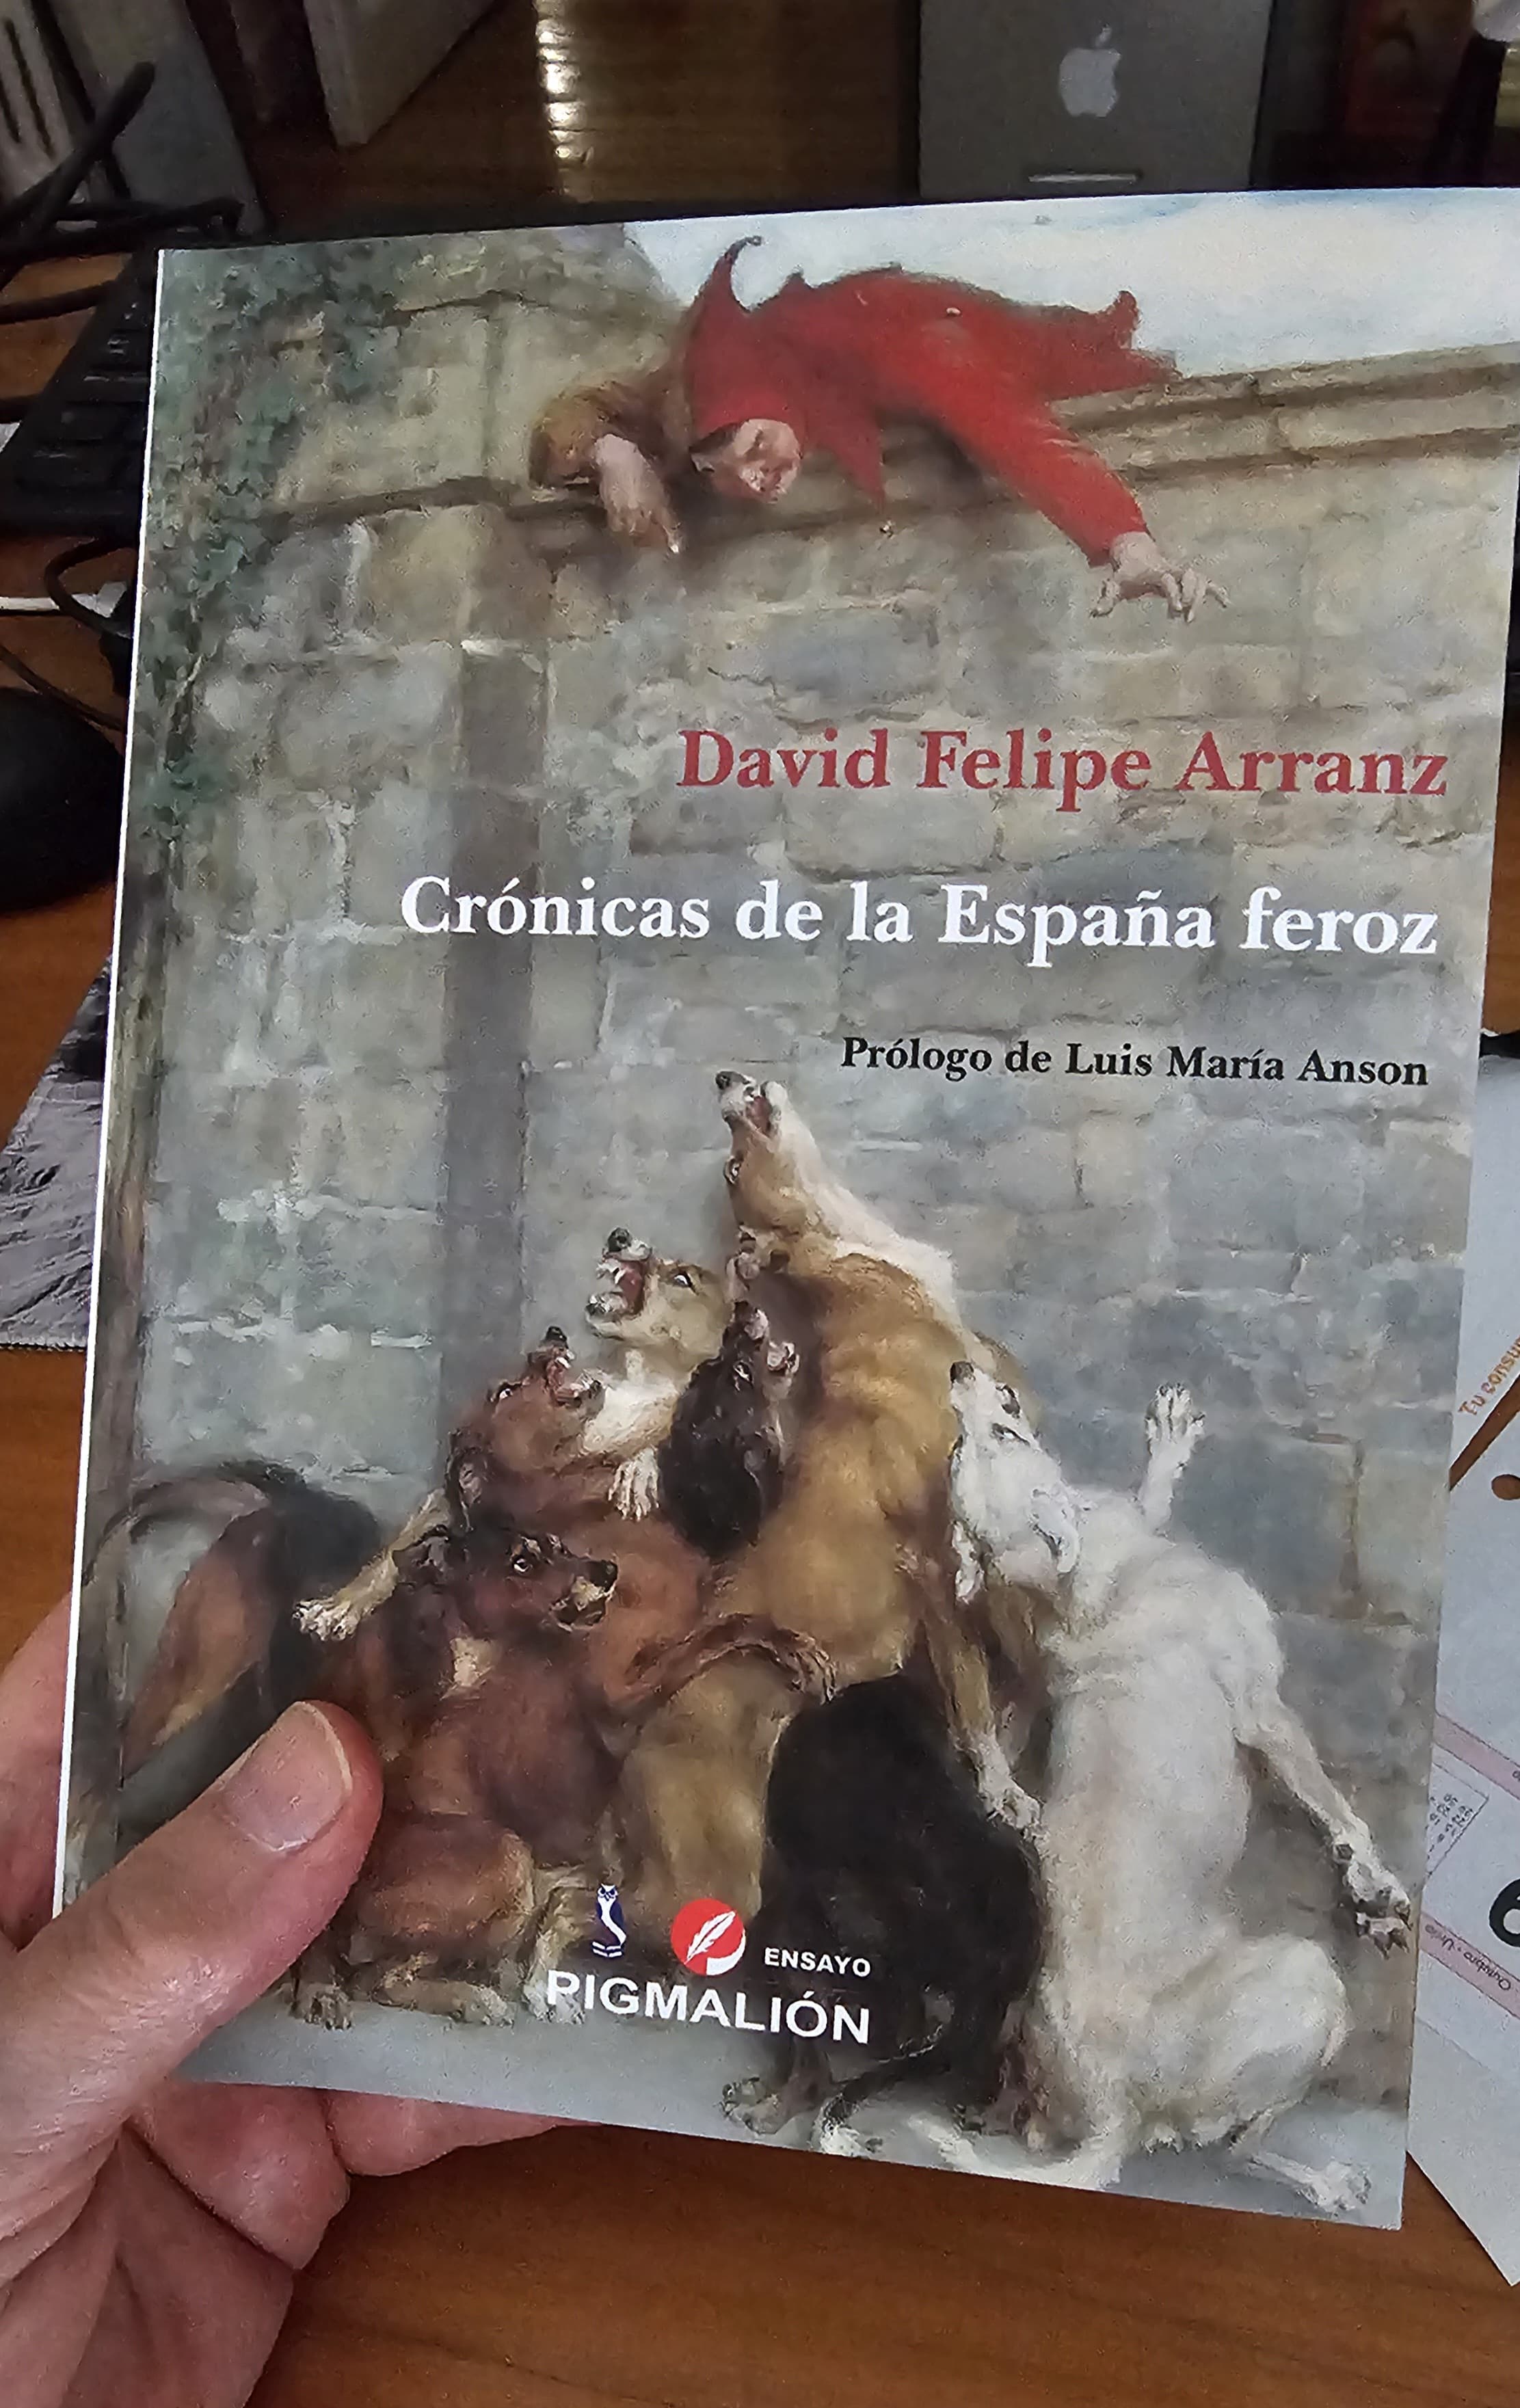 David Felipe Arranz, elegantemente feroz 